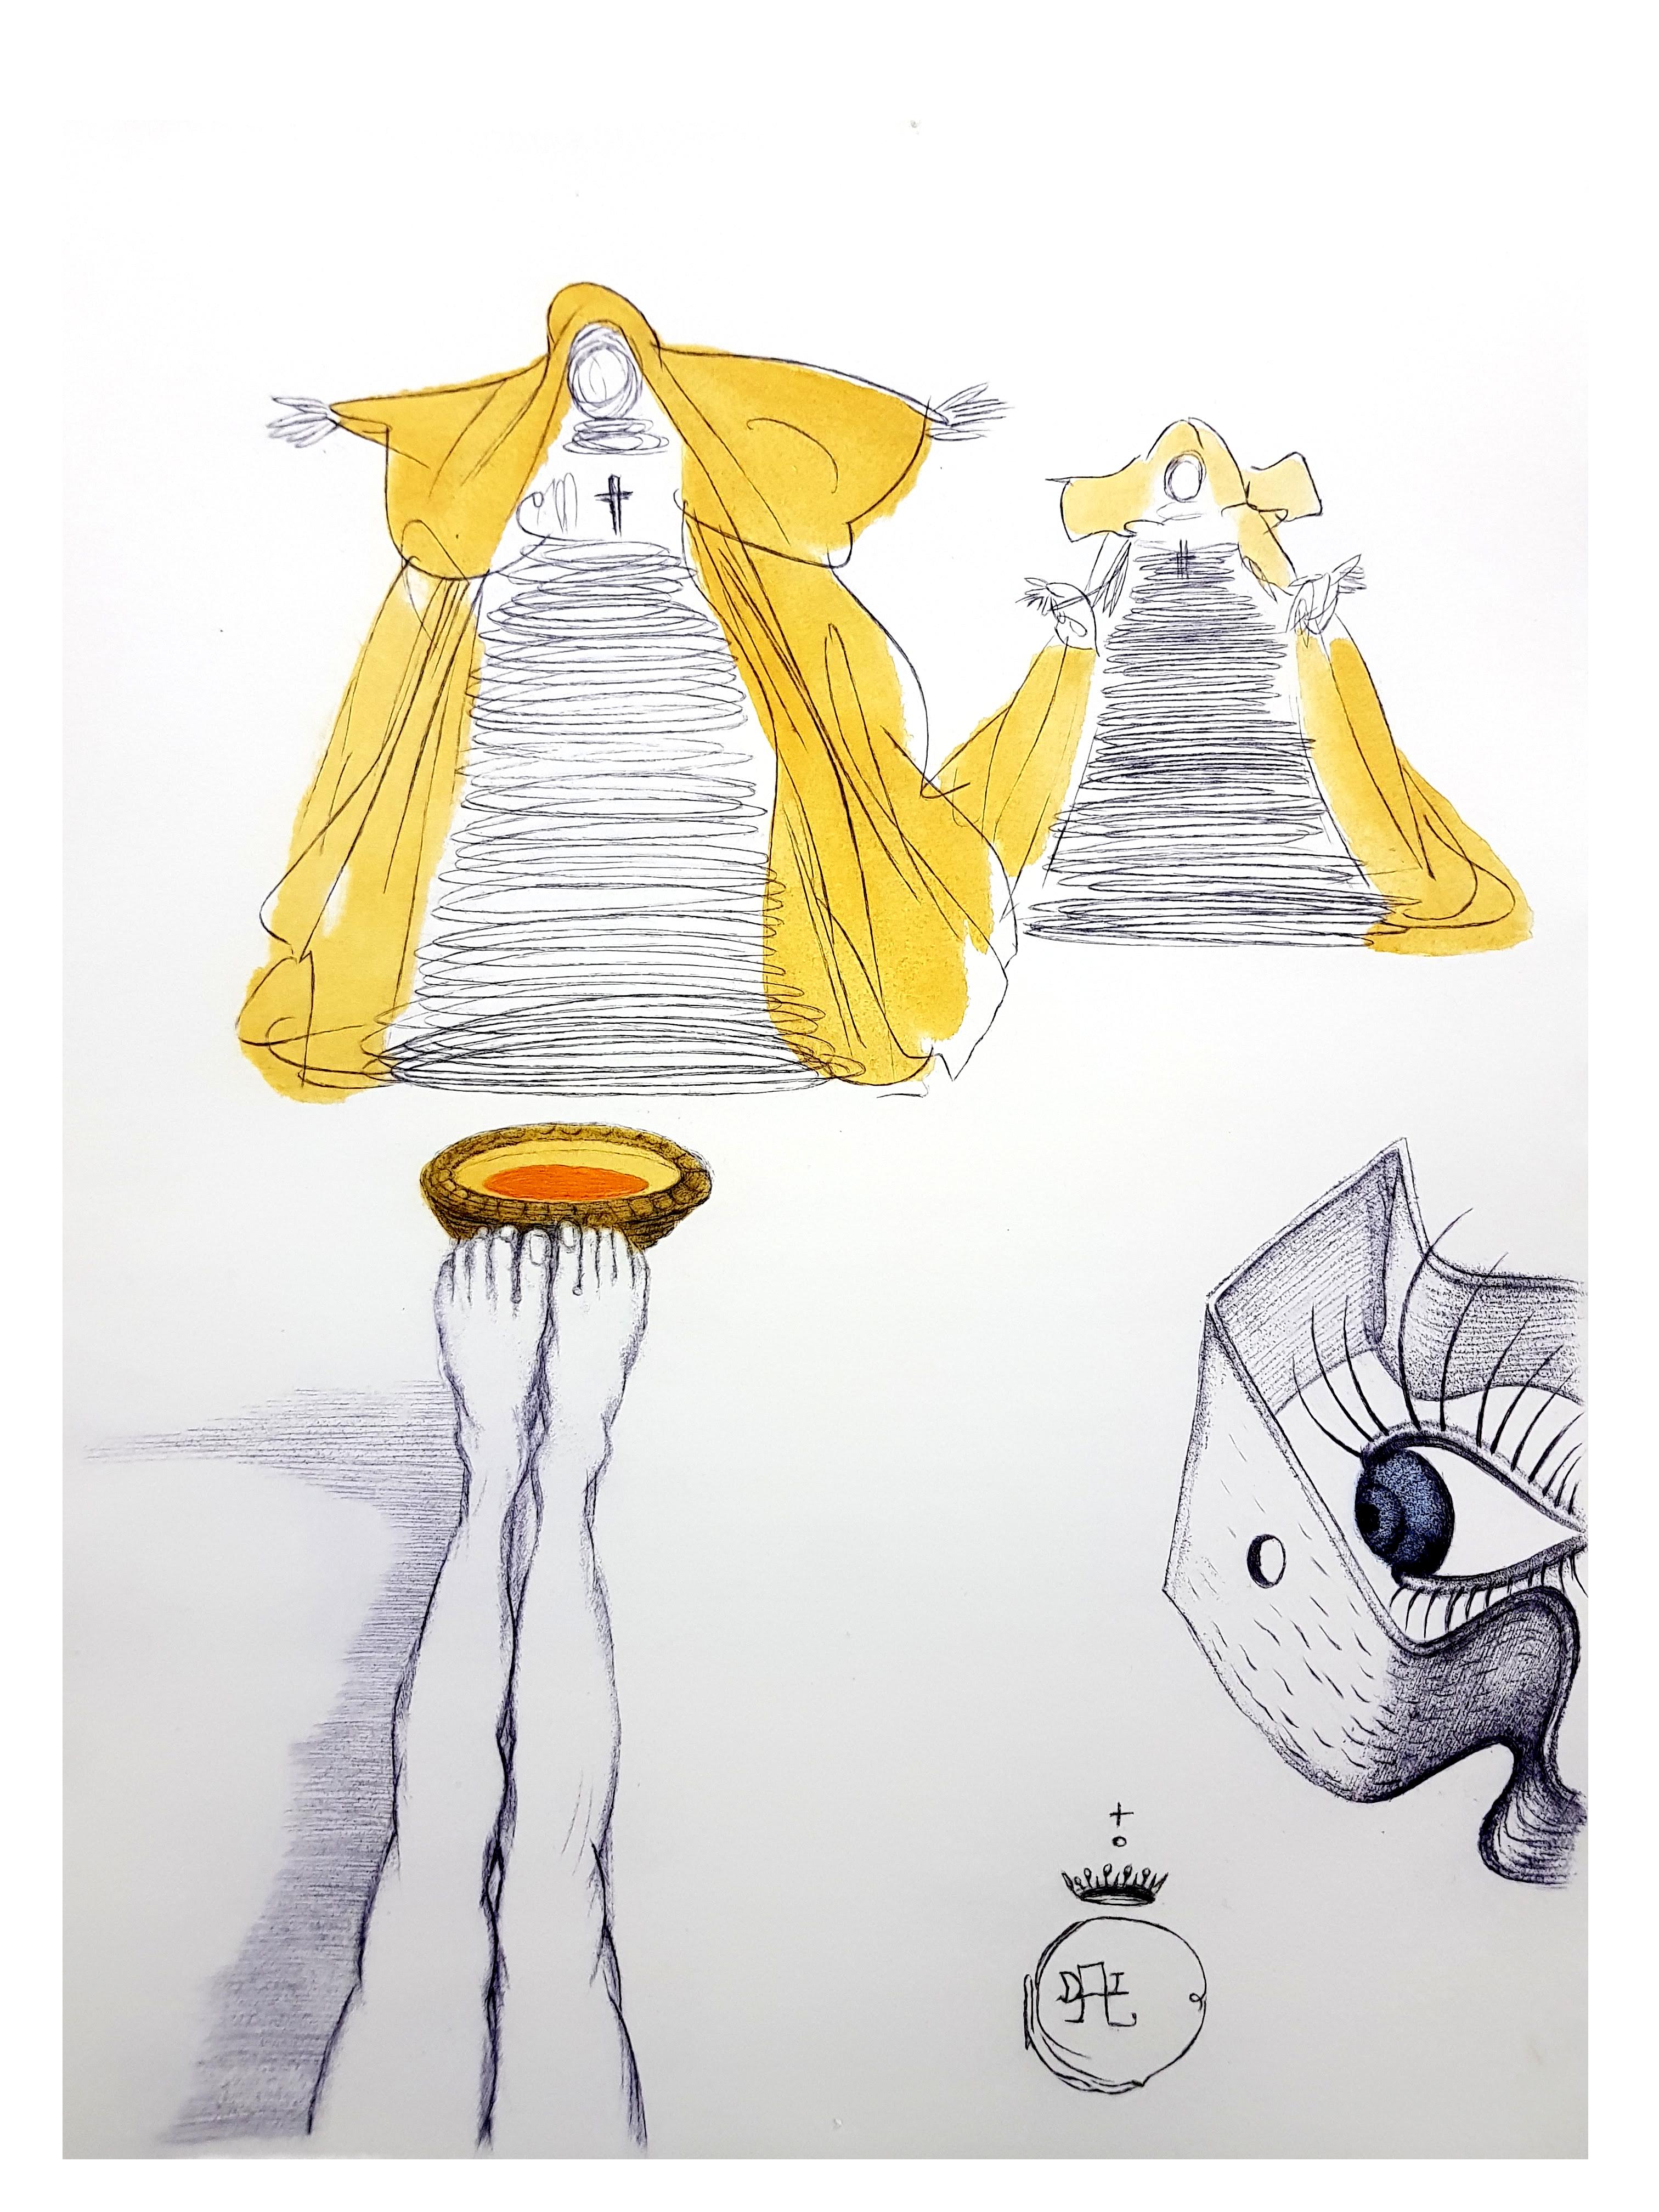 Salvador Dali - Montres pour les yeux - Gravure originale
Dimensions : 38 x 28 cm
Edition : 390
1967
Sur vélin de Rives
Références : Field 67-4 (p. 32-33) / Michler & Lopsinger 174 à 187. 